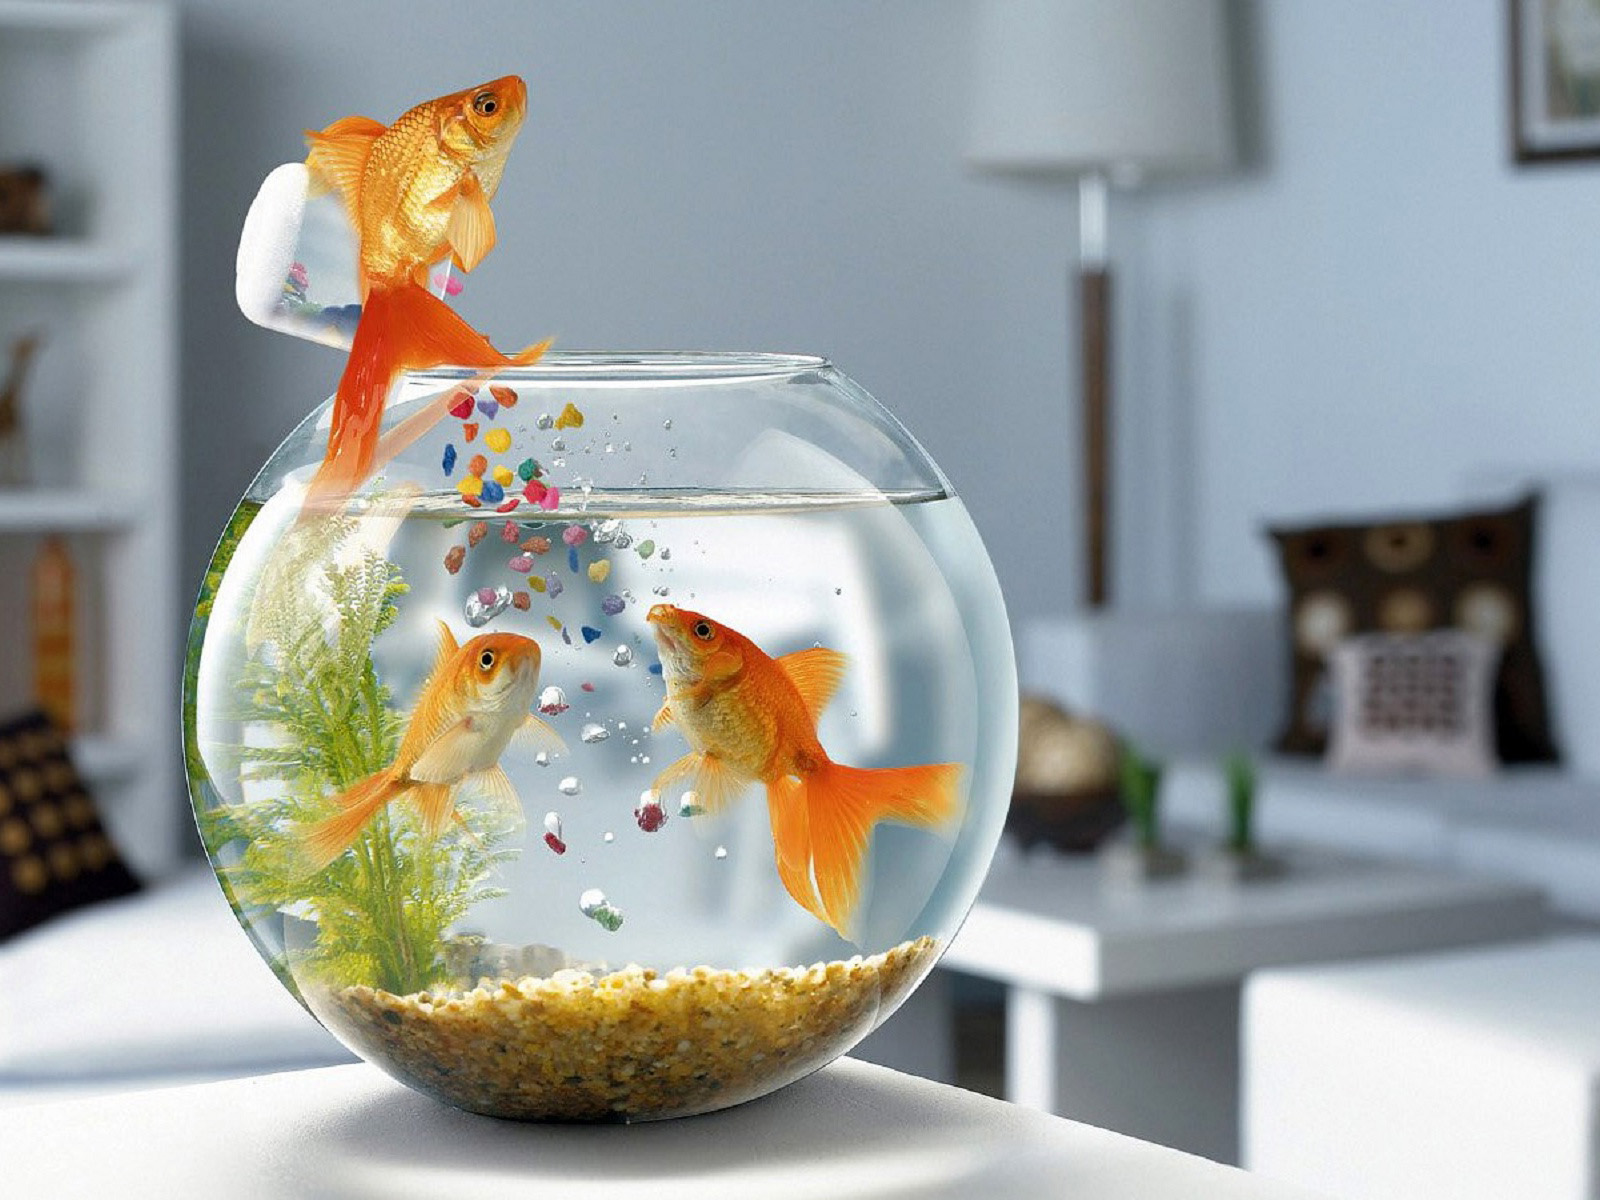 desktop wallpaper met vis die goudvissen voert grappige wallpaper ...